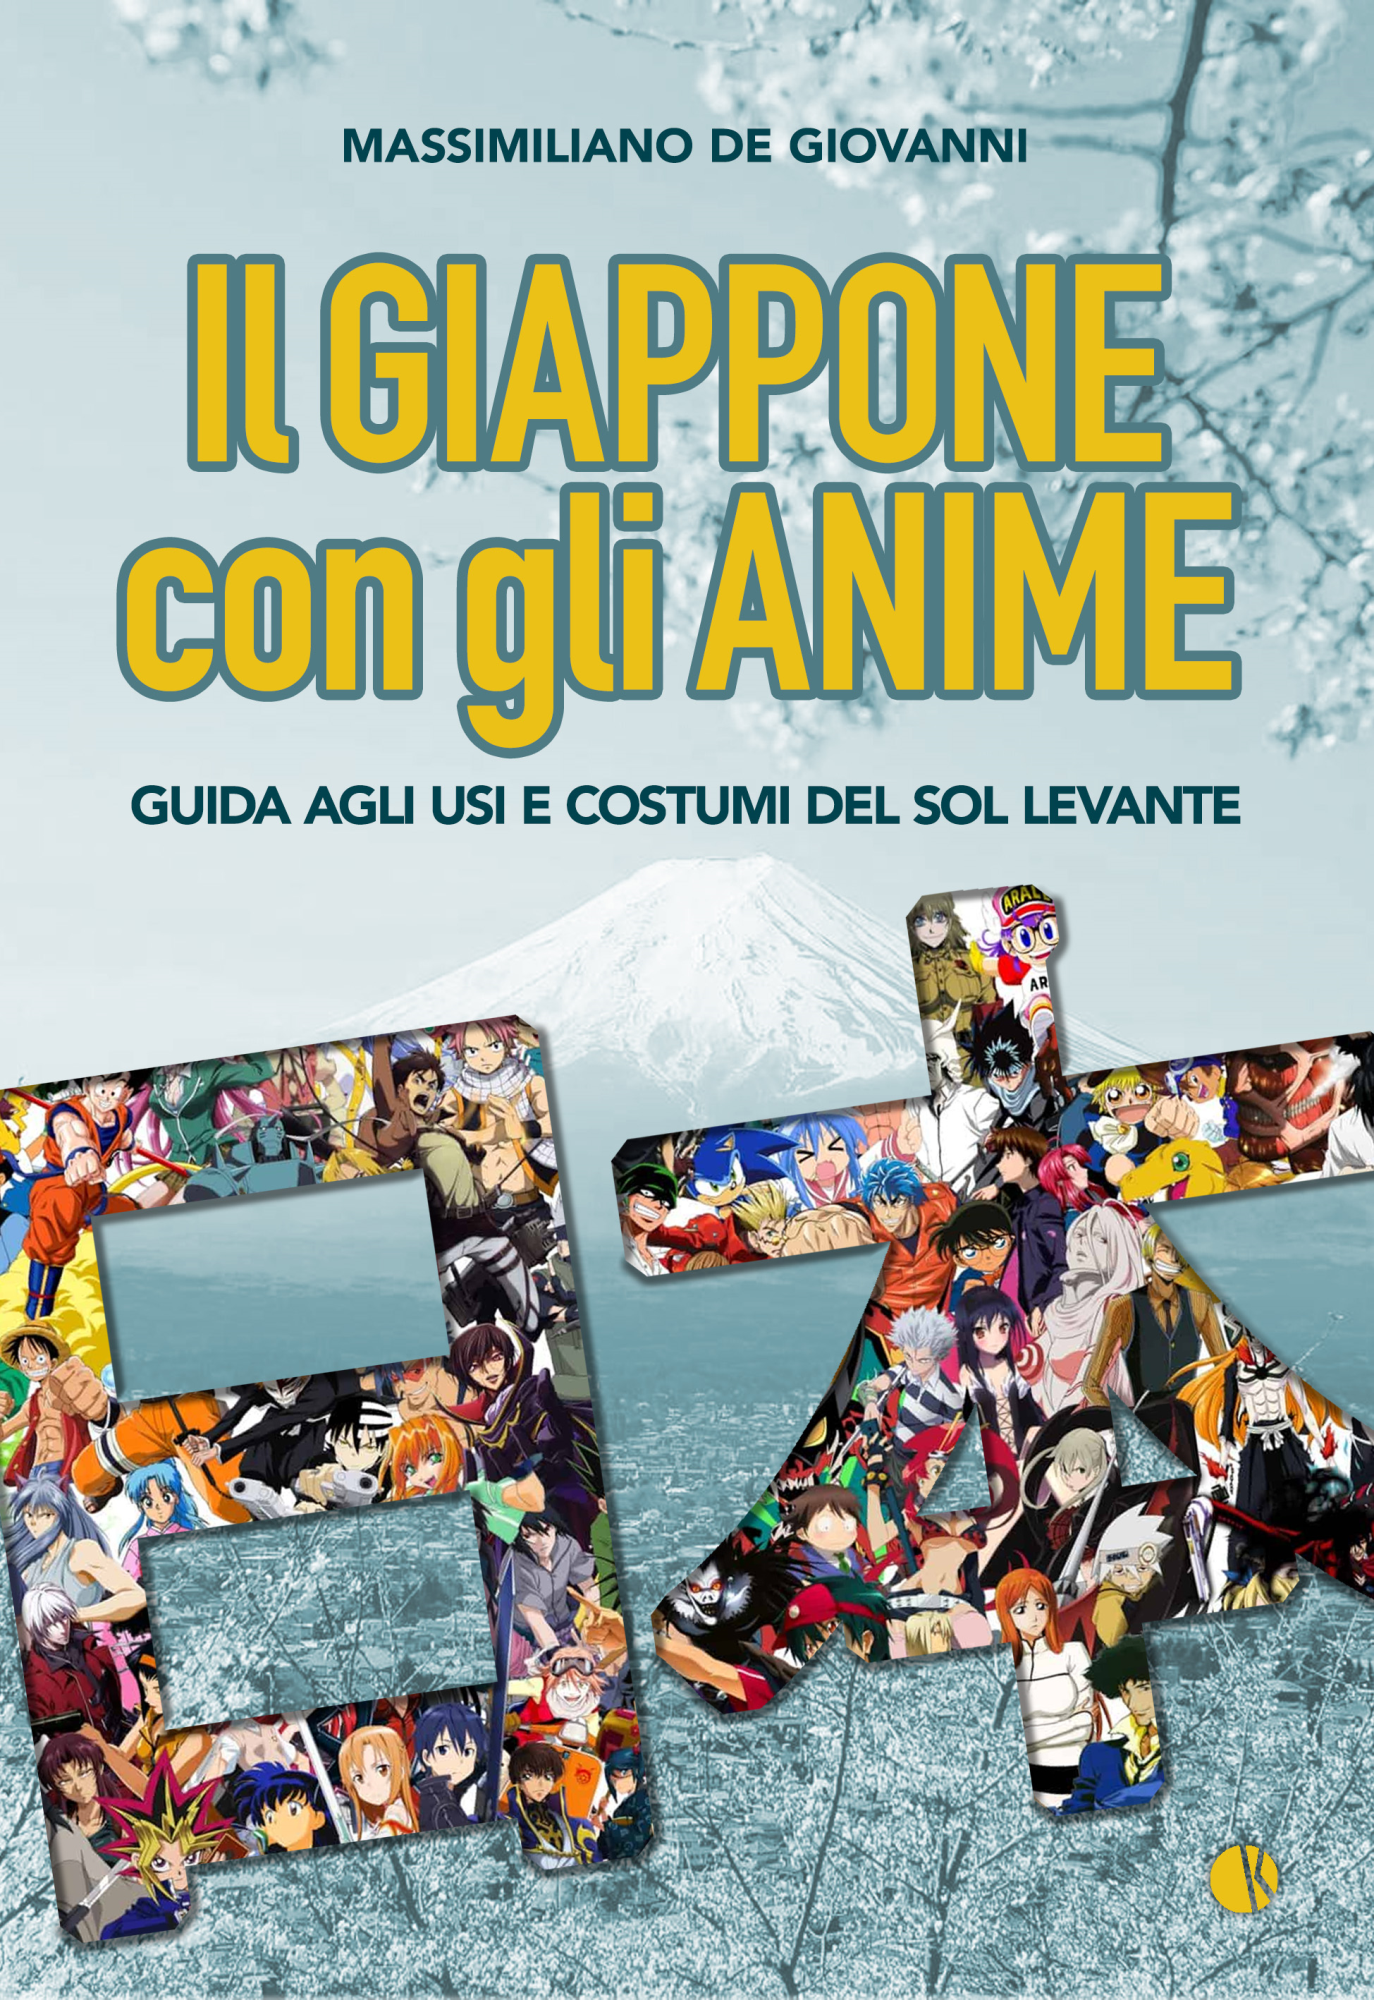 Il Giappone con gli Anime - Guida agli Usi e Costumi del Sol Levante -  Volume Unico - Kappalab - Italiano - MyComics